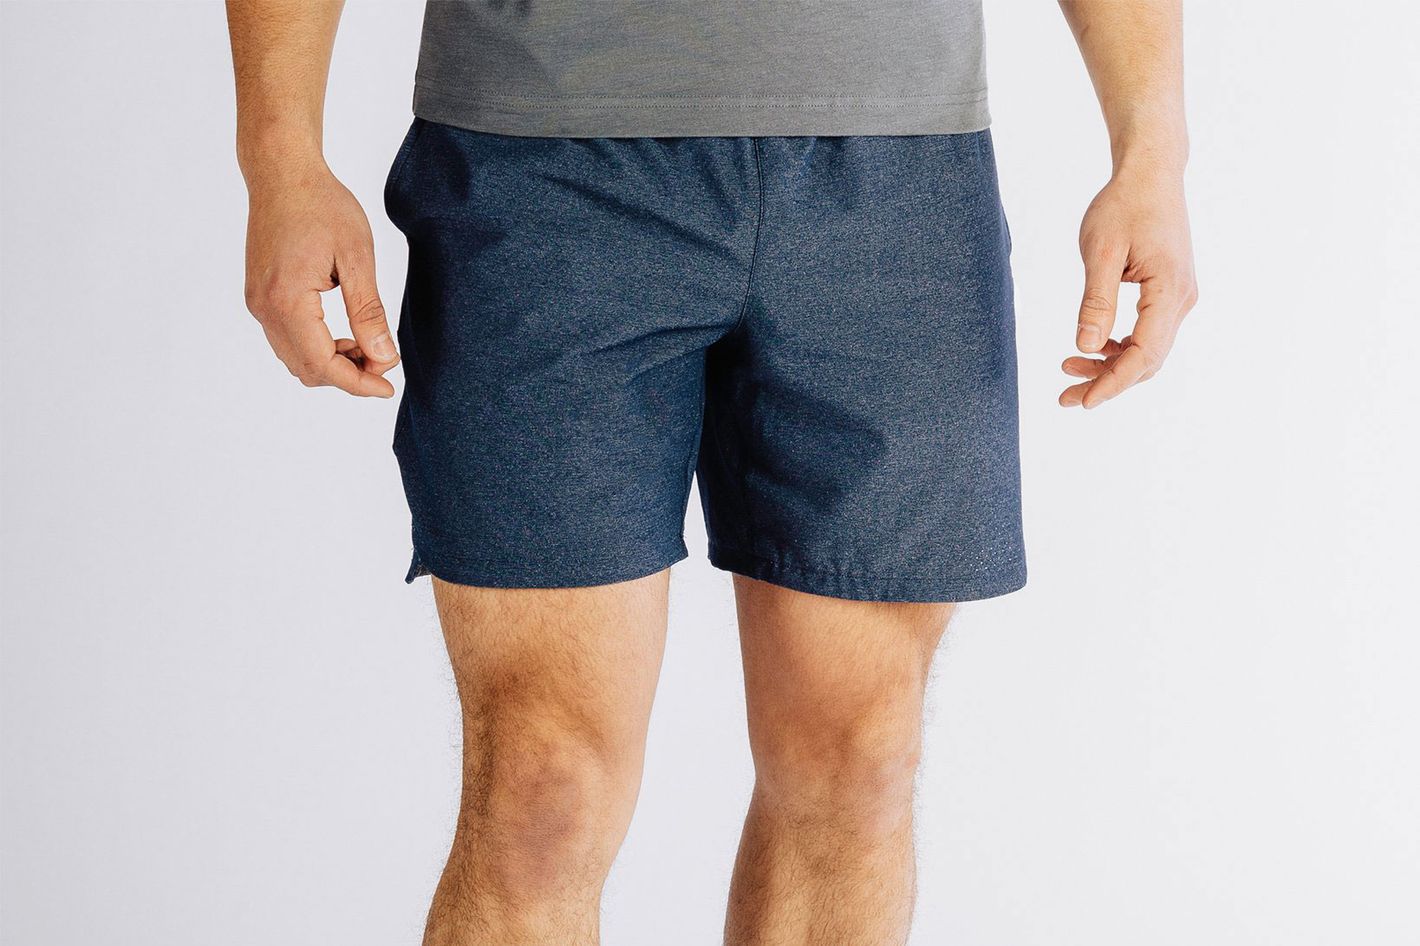 12 Best Gym Shorts for Men